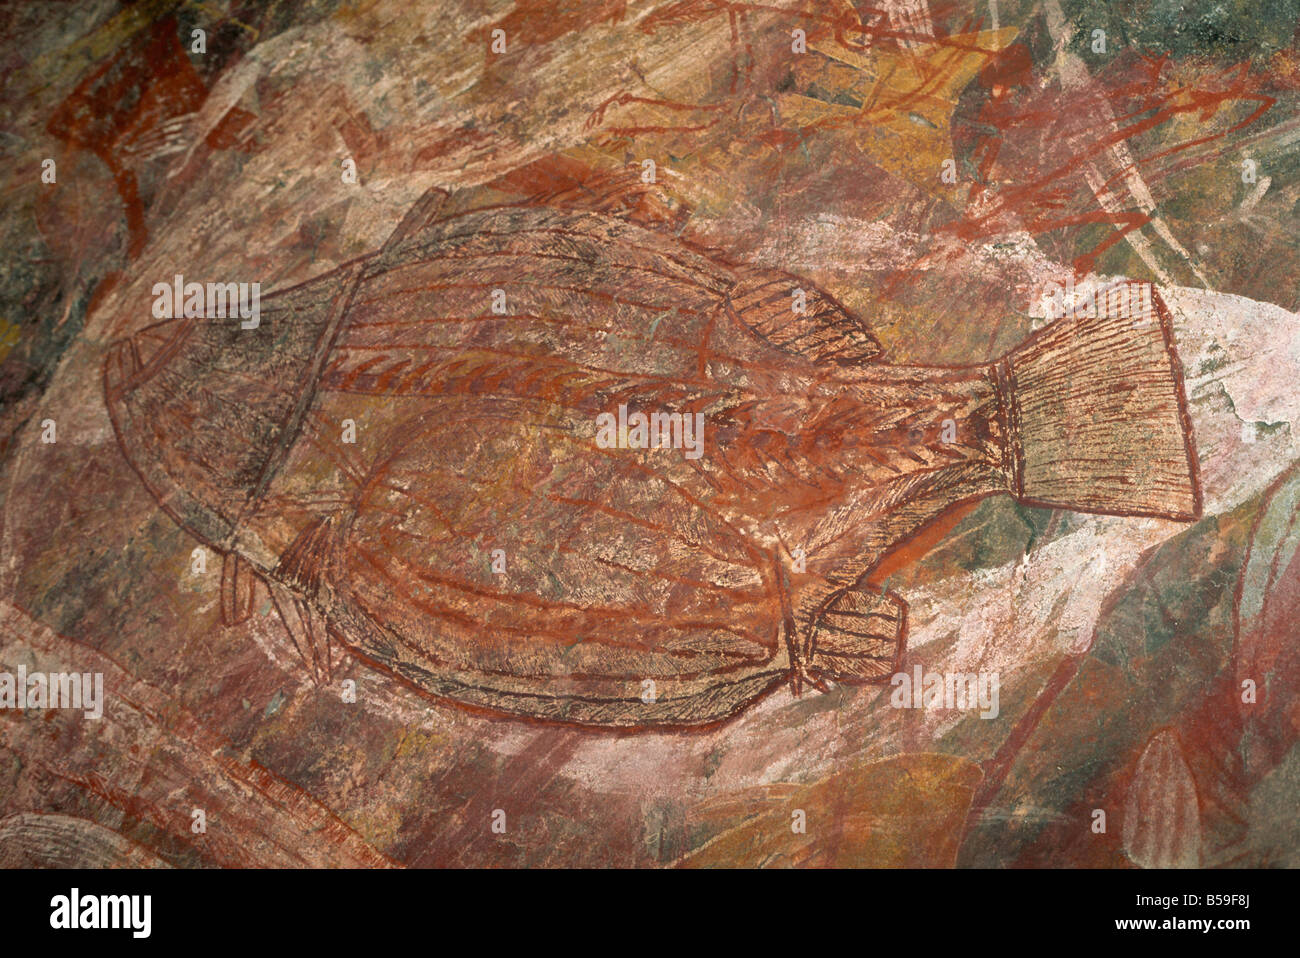 X-ray style poisson sur le site d'art rupestre aborigène à Ubirr Rock, Kakadu National Park, Territoire du Nord, Australie Banque D'Images